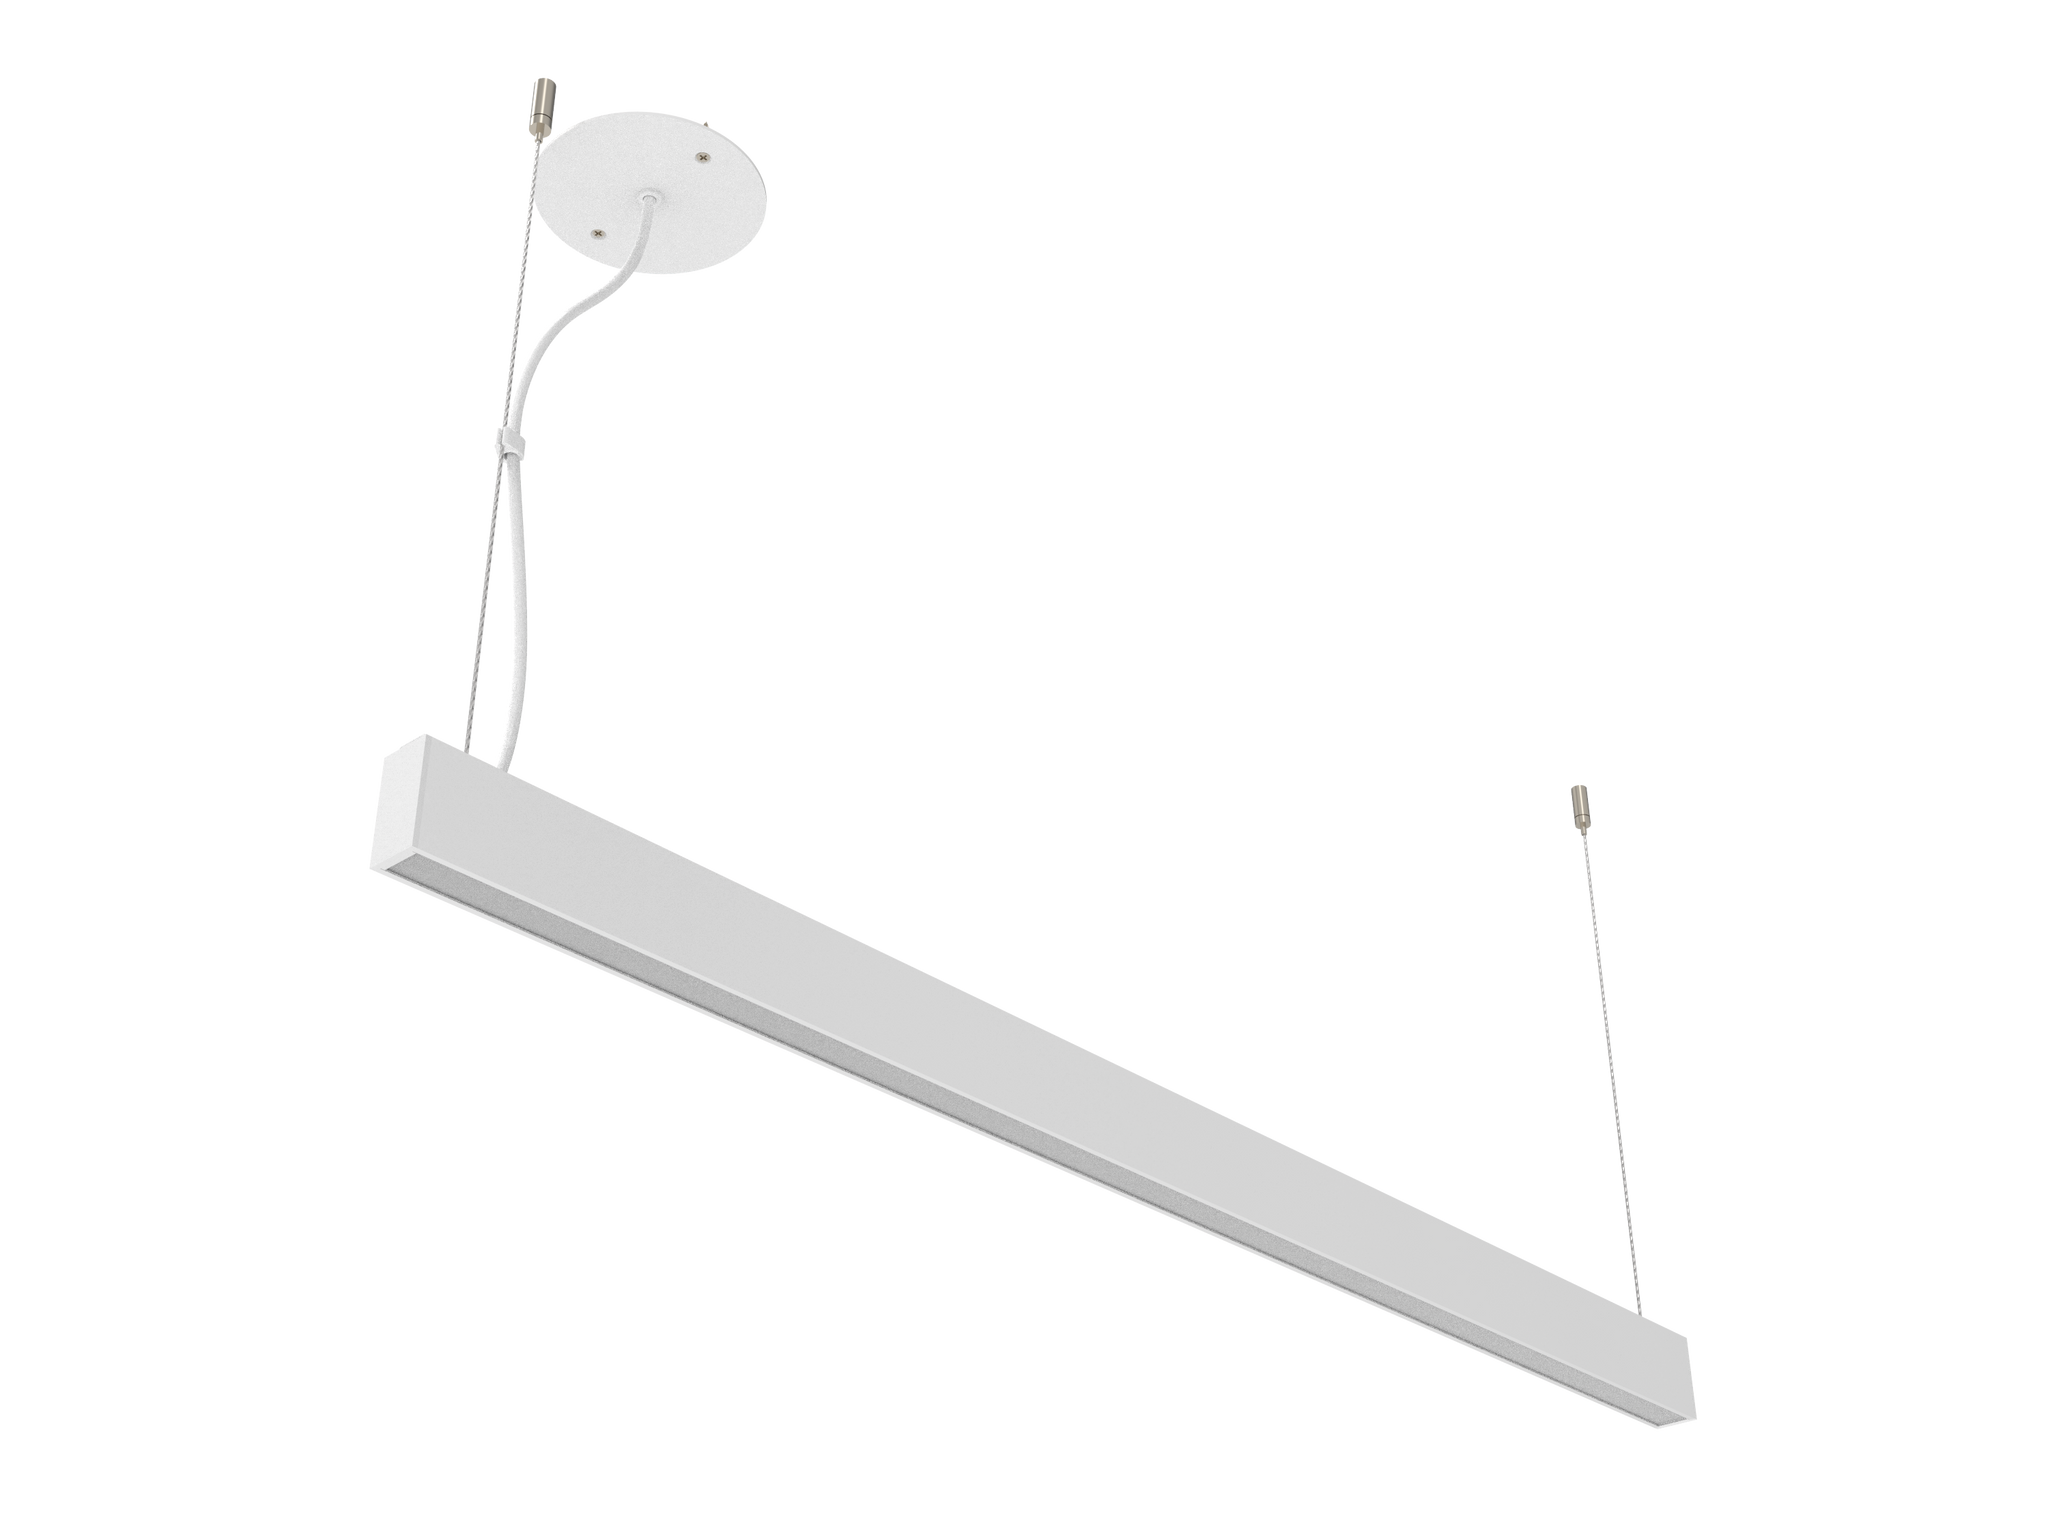 P2854P220V - Luminária LED Integrado Luz Direta e Indireta 2,8 x 5,4cm (220V)